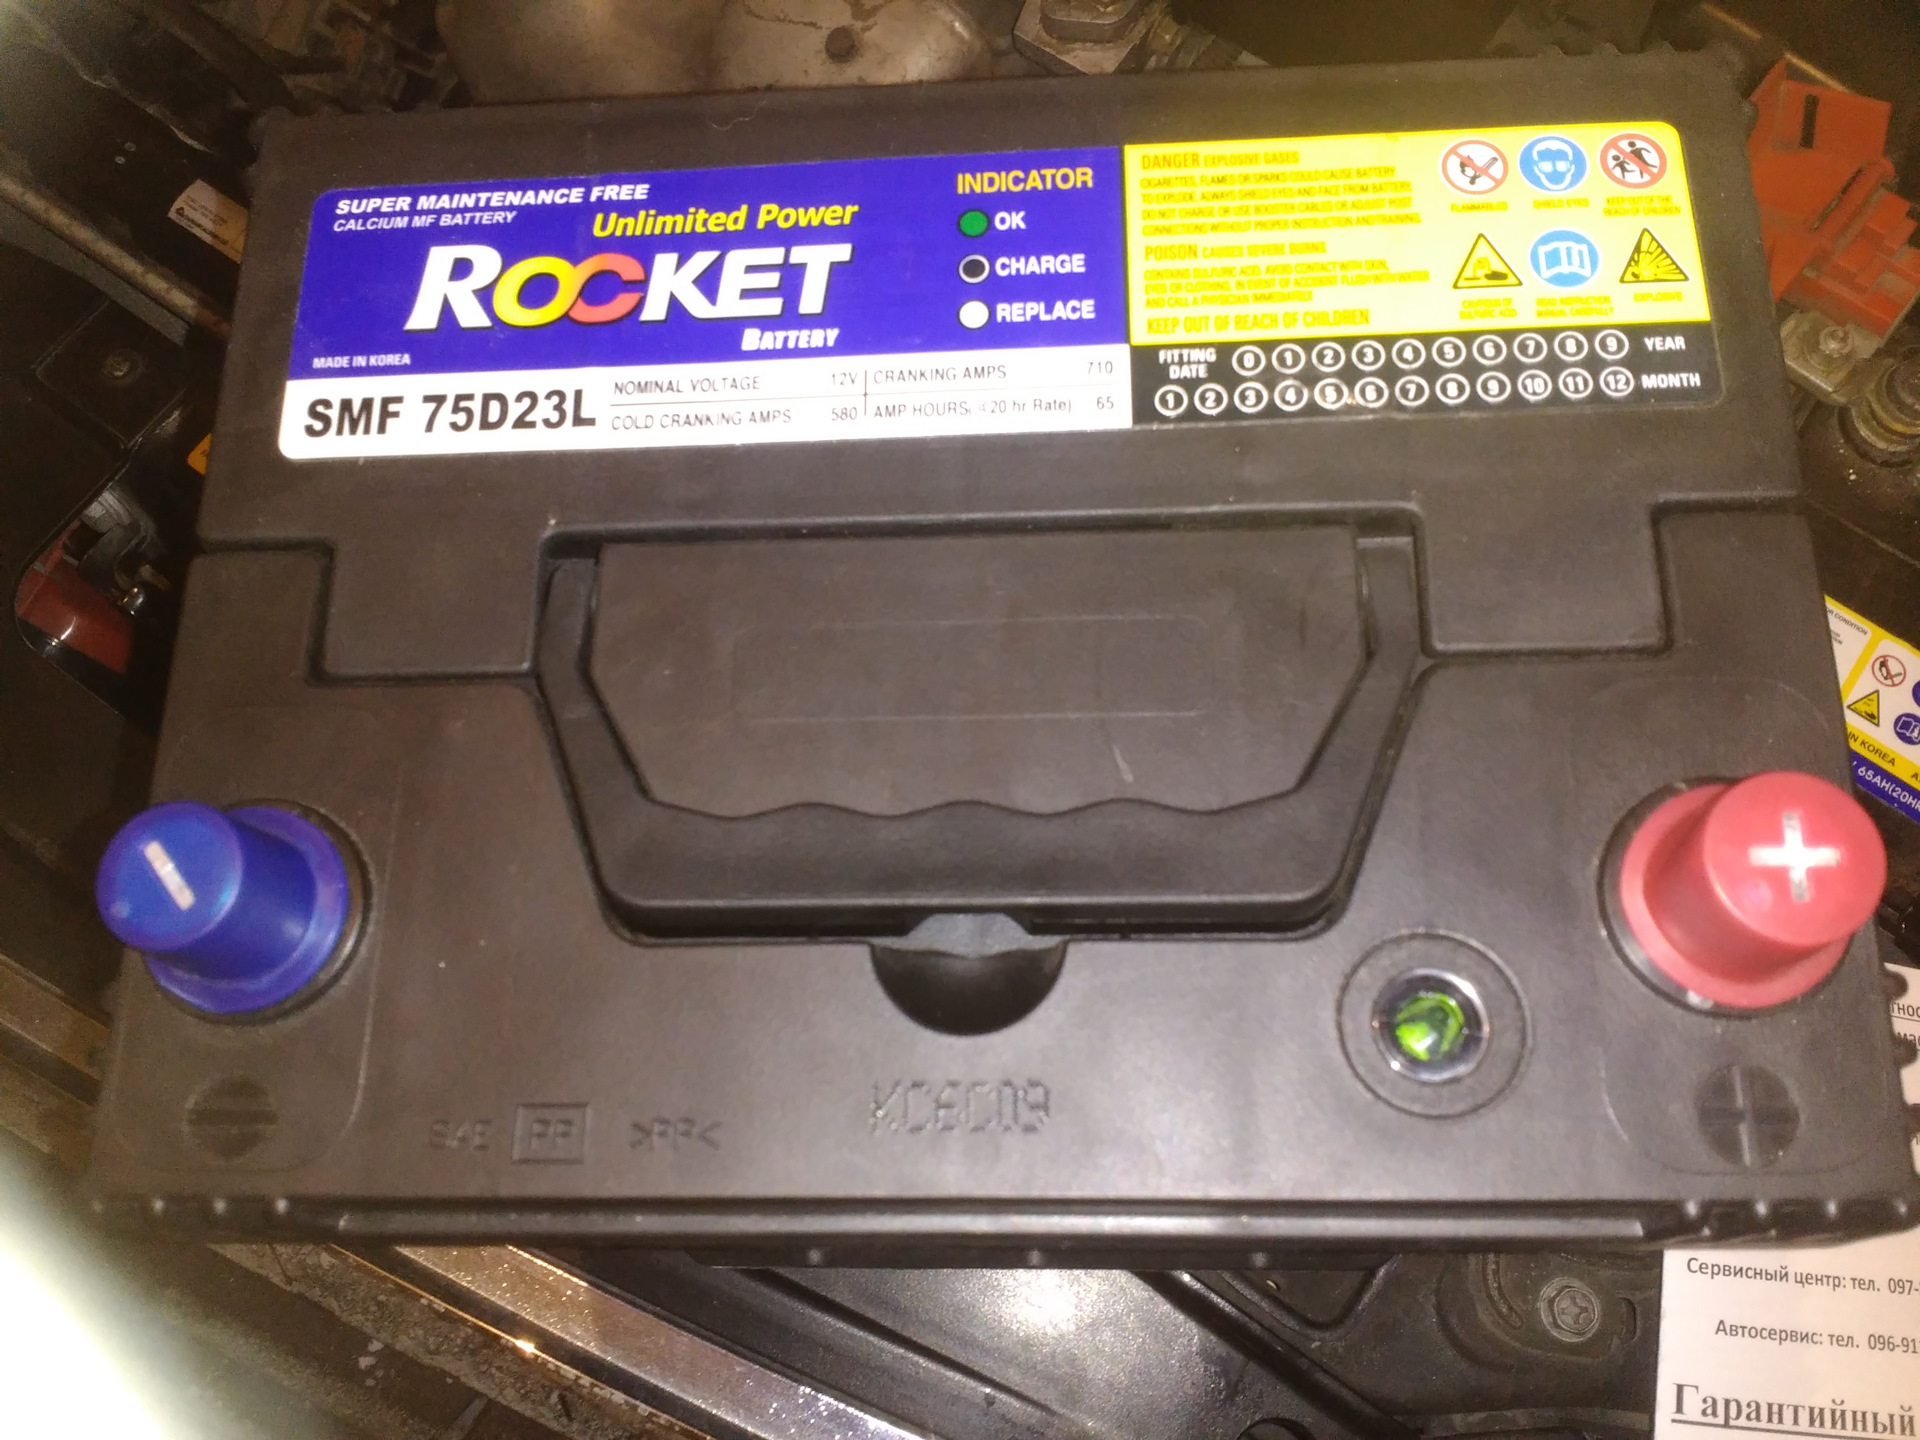 75d23l battery. Rocket SMF 60 ah65d23l. : Rocket SMF 75d 23l 65ah+580a. Аккумулятор Rocket 75d23l. Battery Rocket SMF 75d23l.